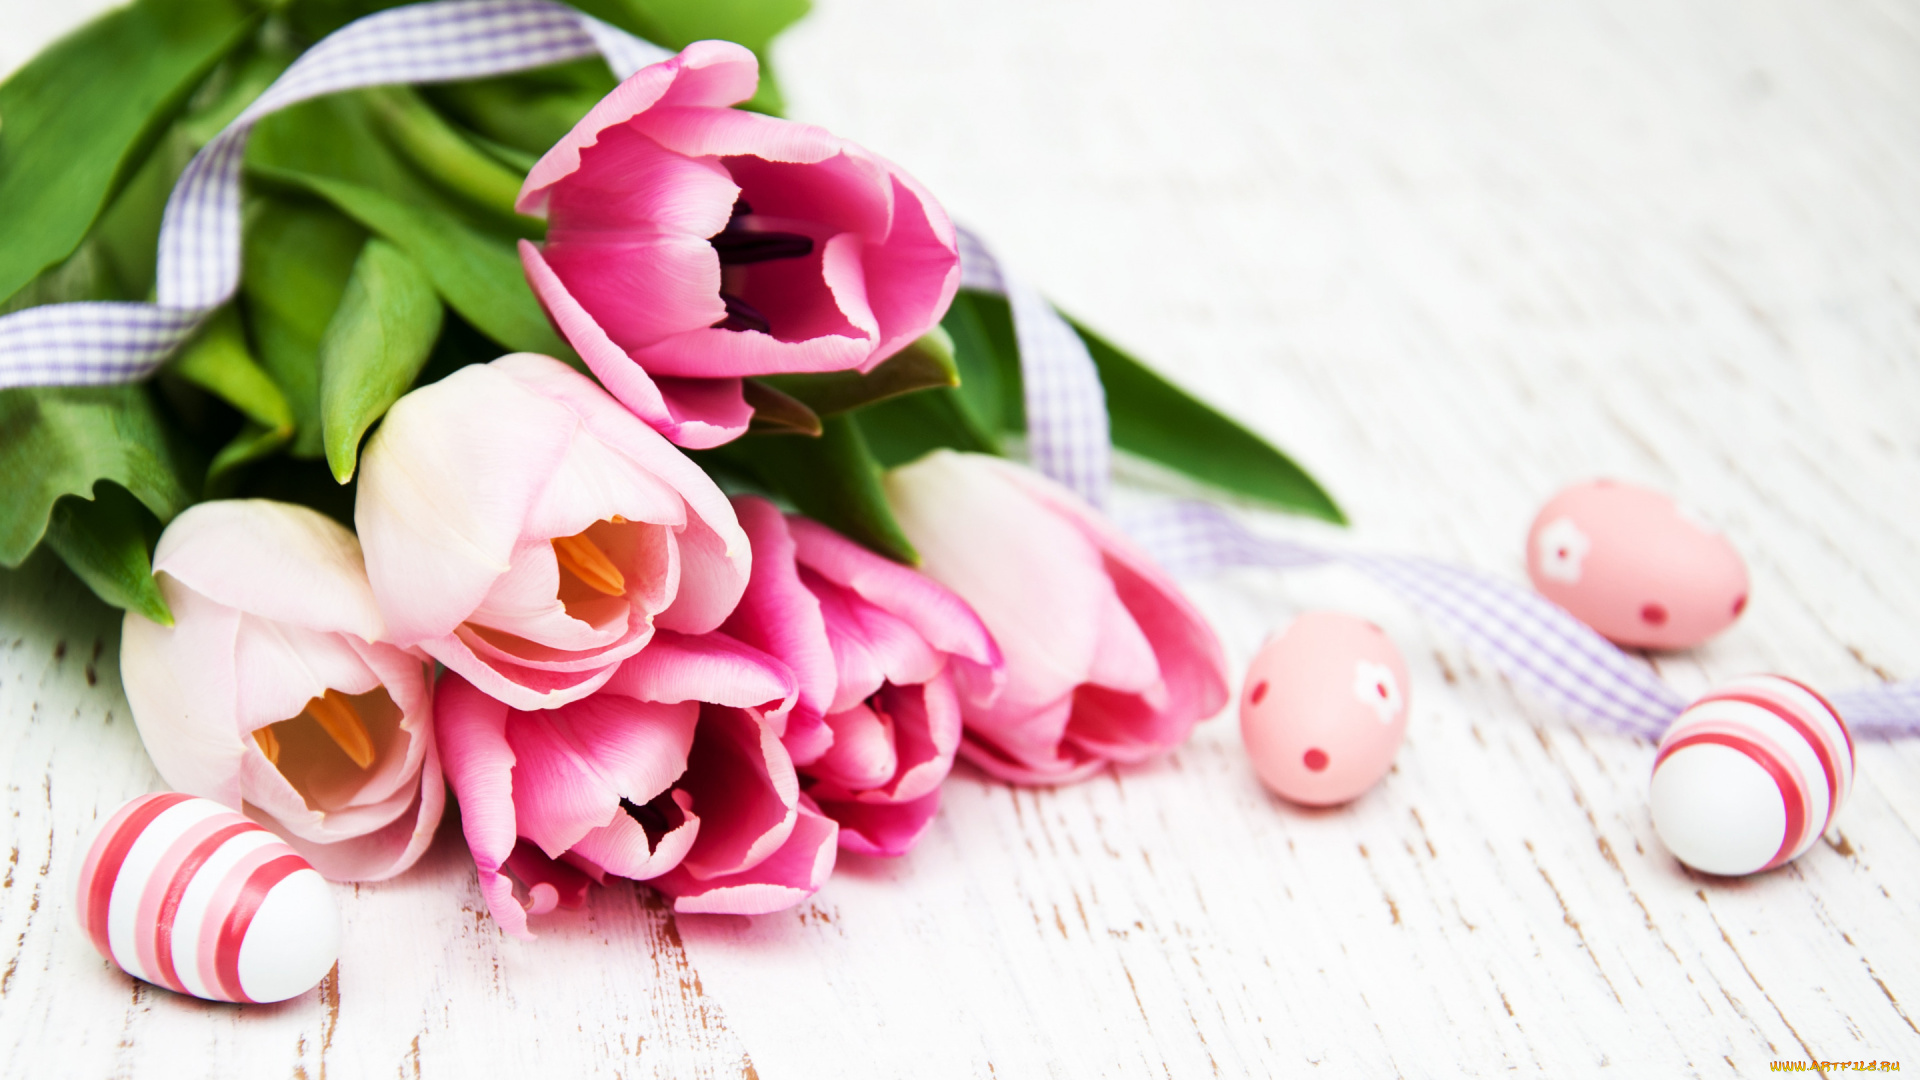 праздничные, пасха, цветы, яйца, тюльпаны, happy, wood, pink, flowers, tulips, easter, eggs, decoration